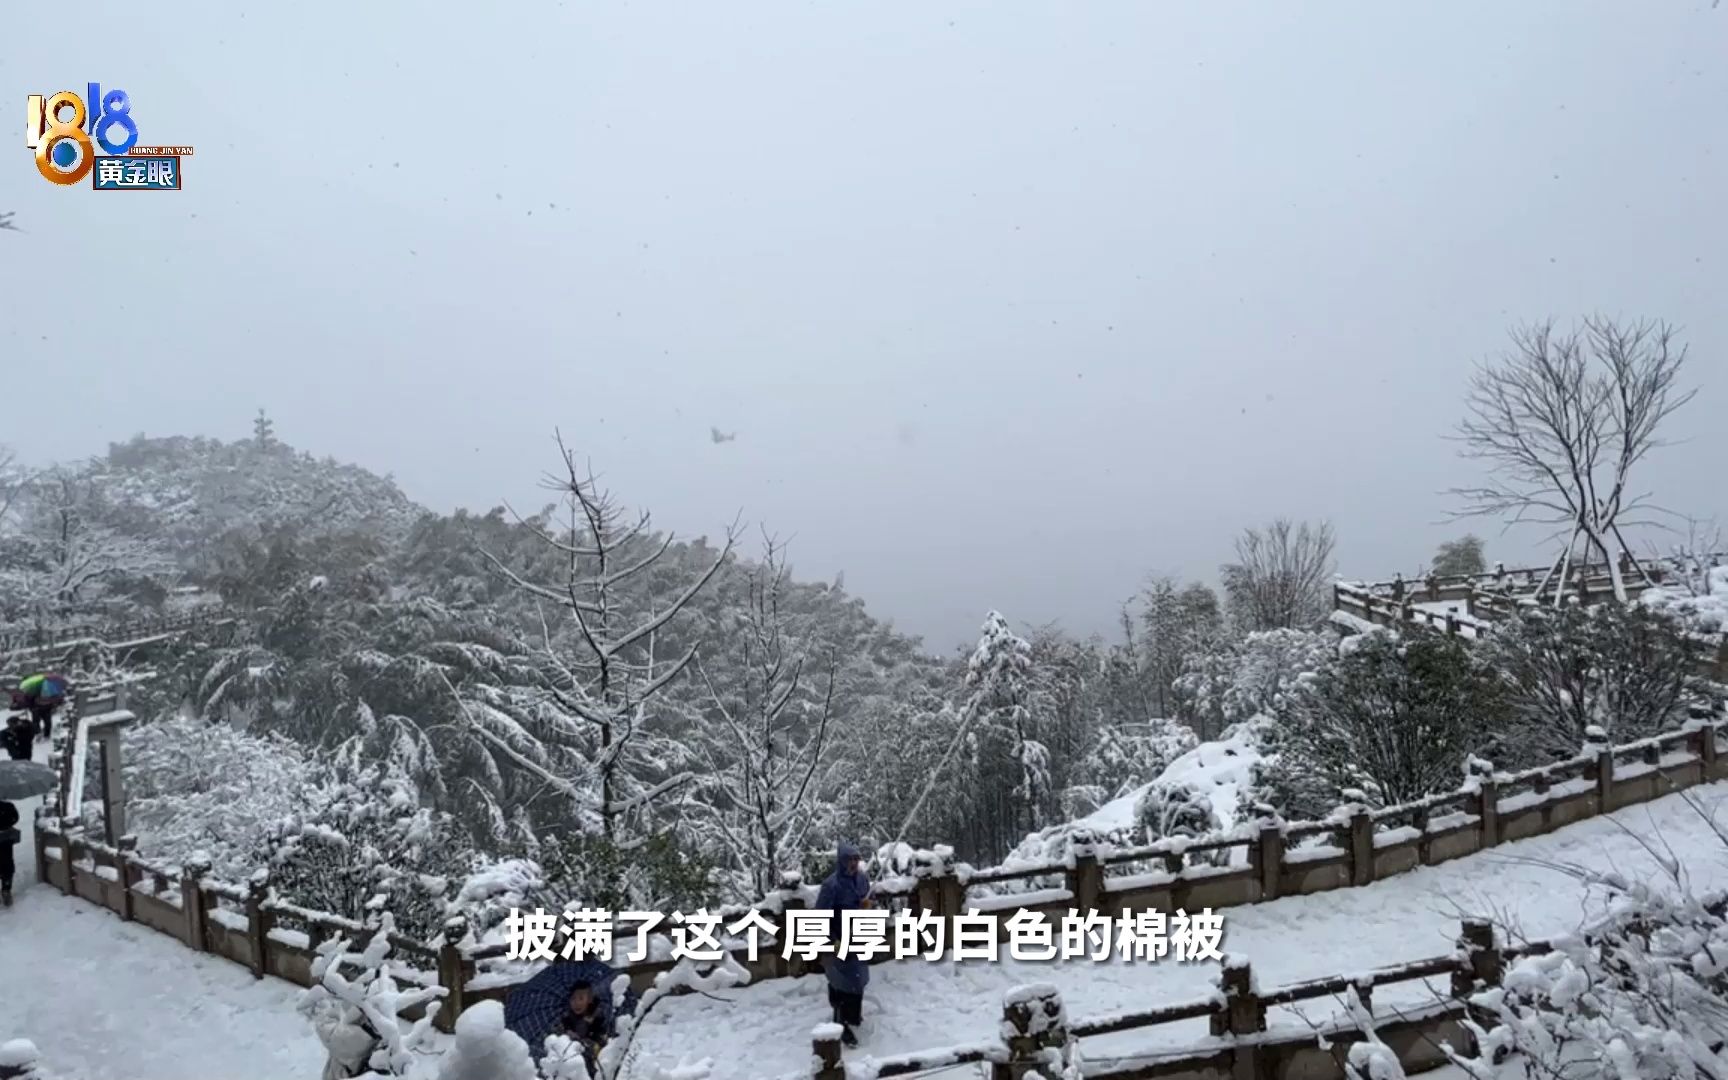 【1818黄金眼】杭州径山漫天白雪 绿树压白雪